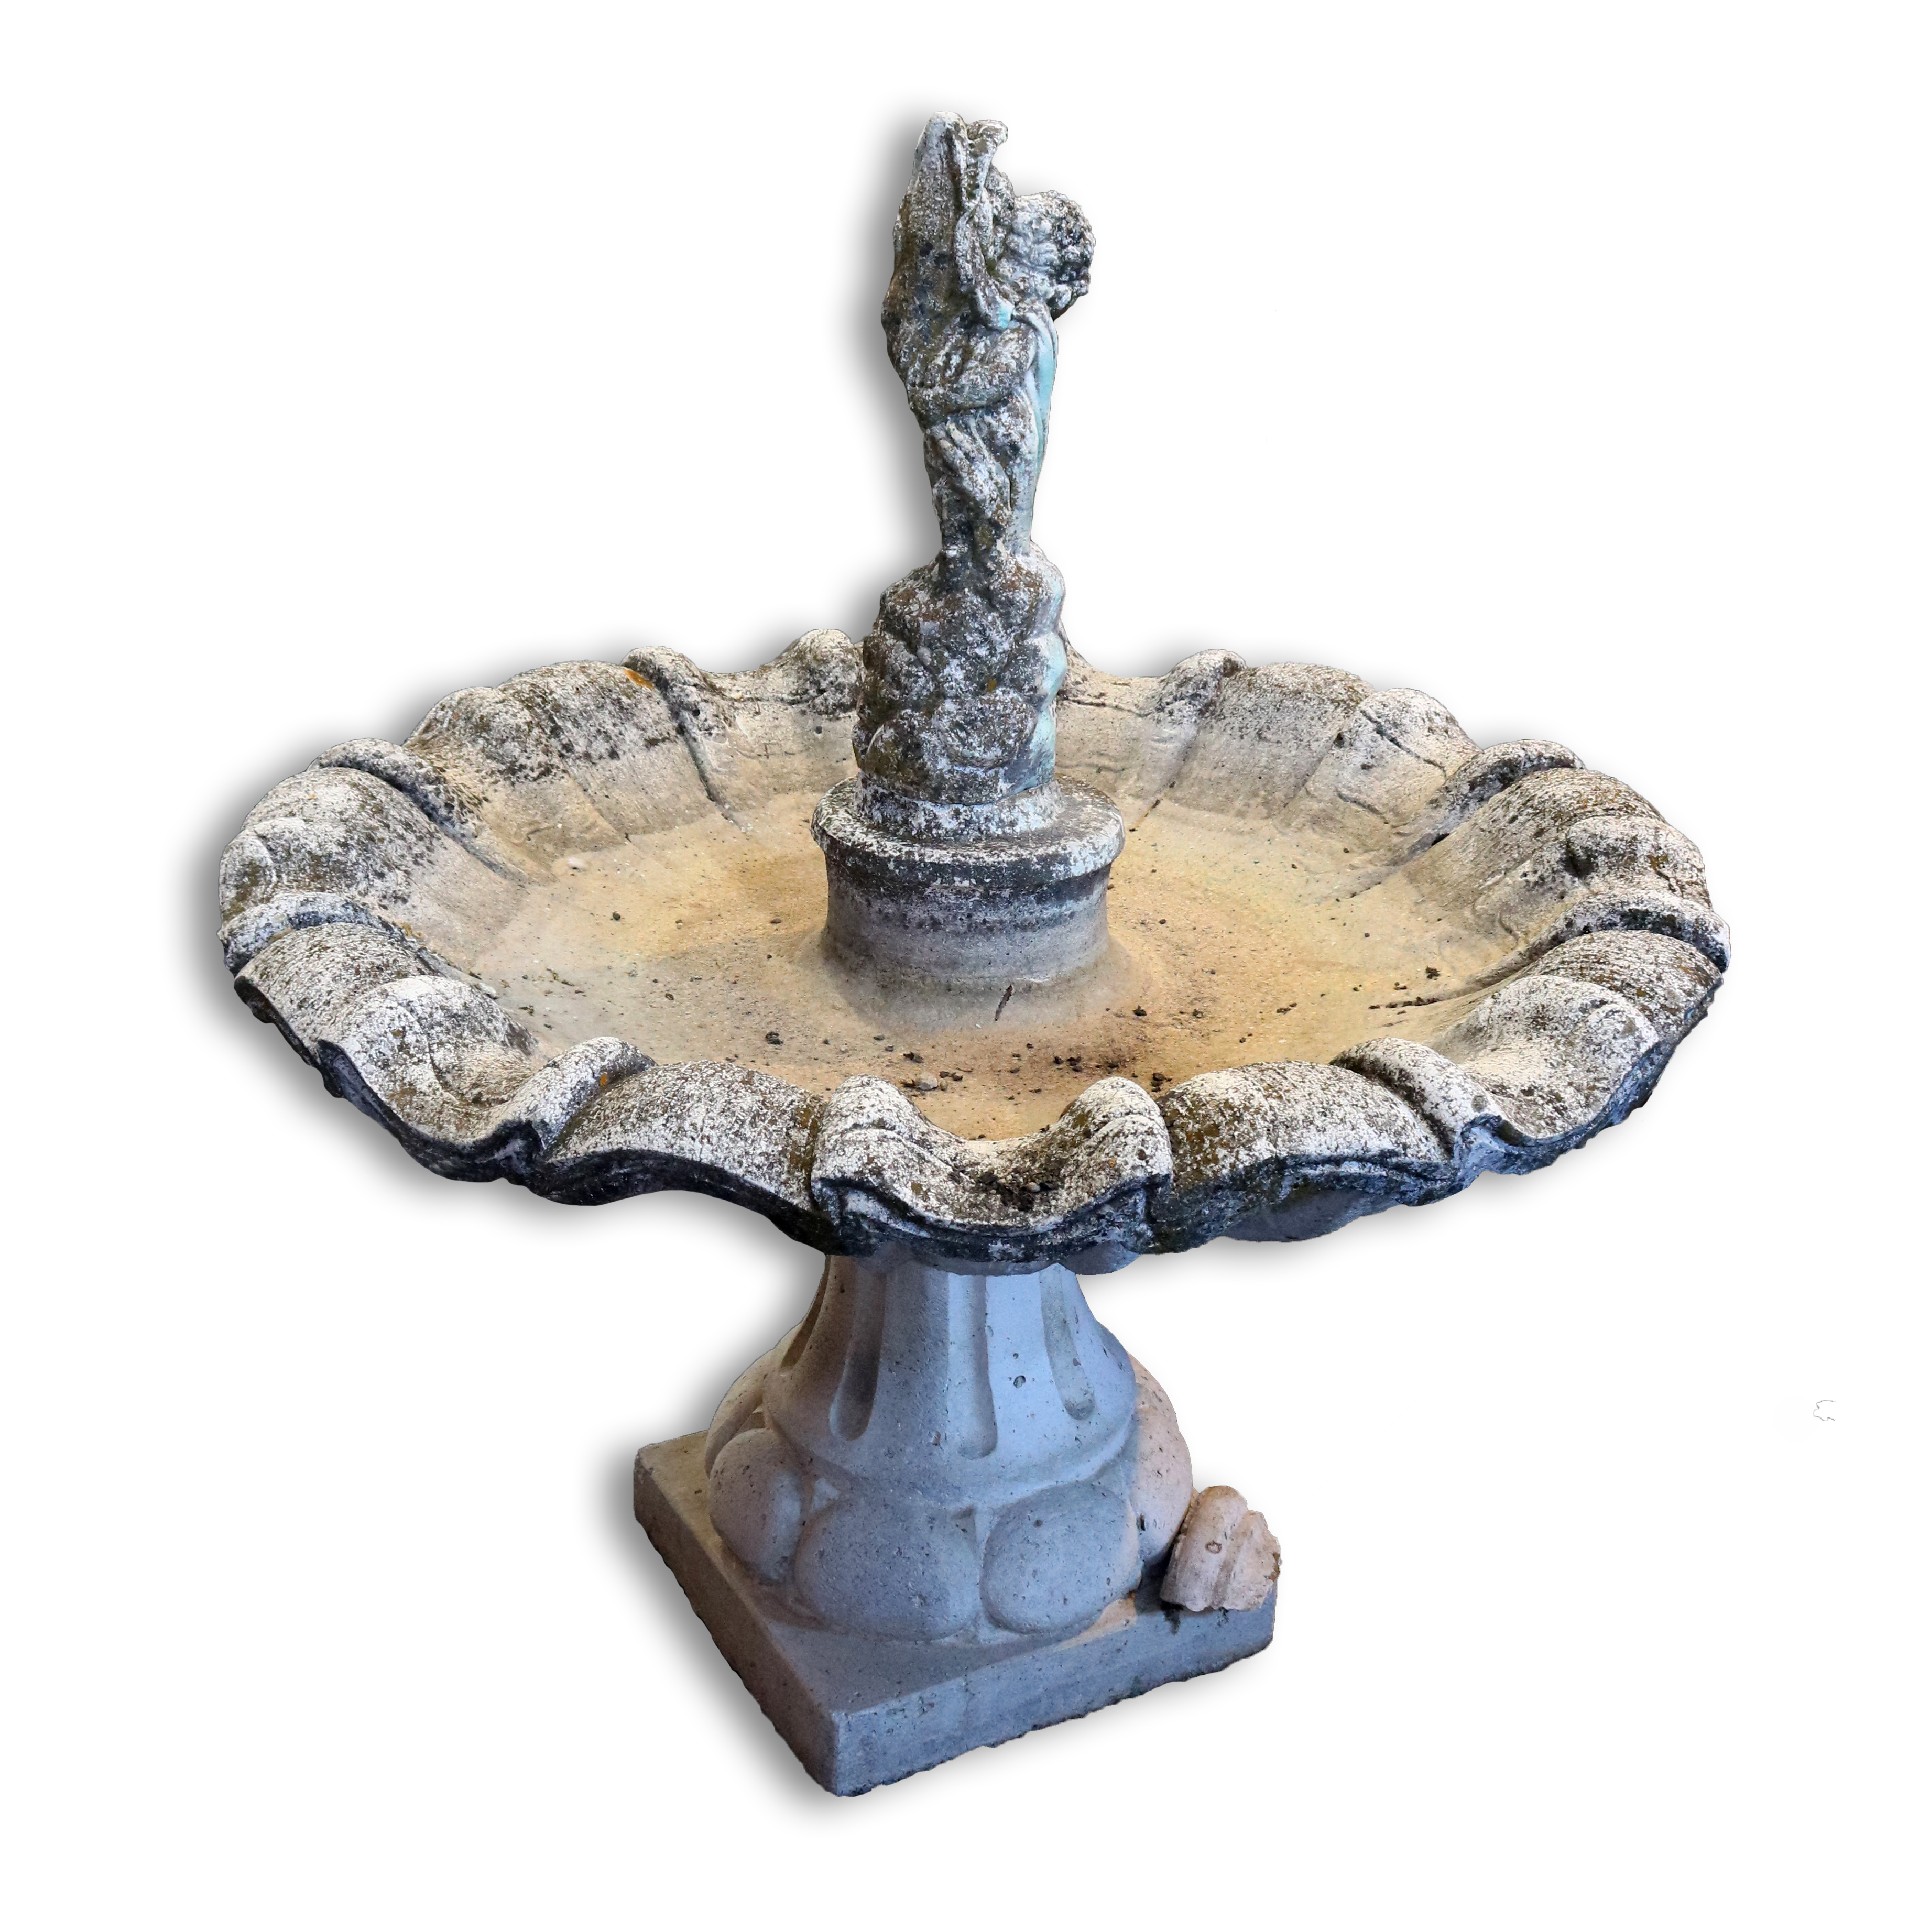 Antica fontana in impasto. Epoca primi 1900. - Fontane Antiche - Arredo Giardino - Prodotti - Antichità Fiorillo